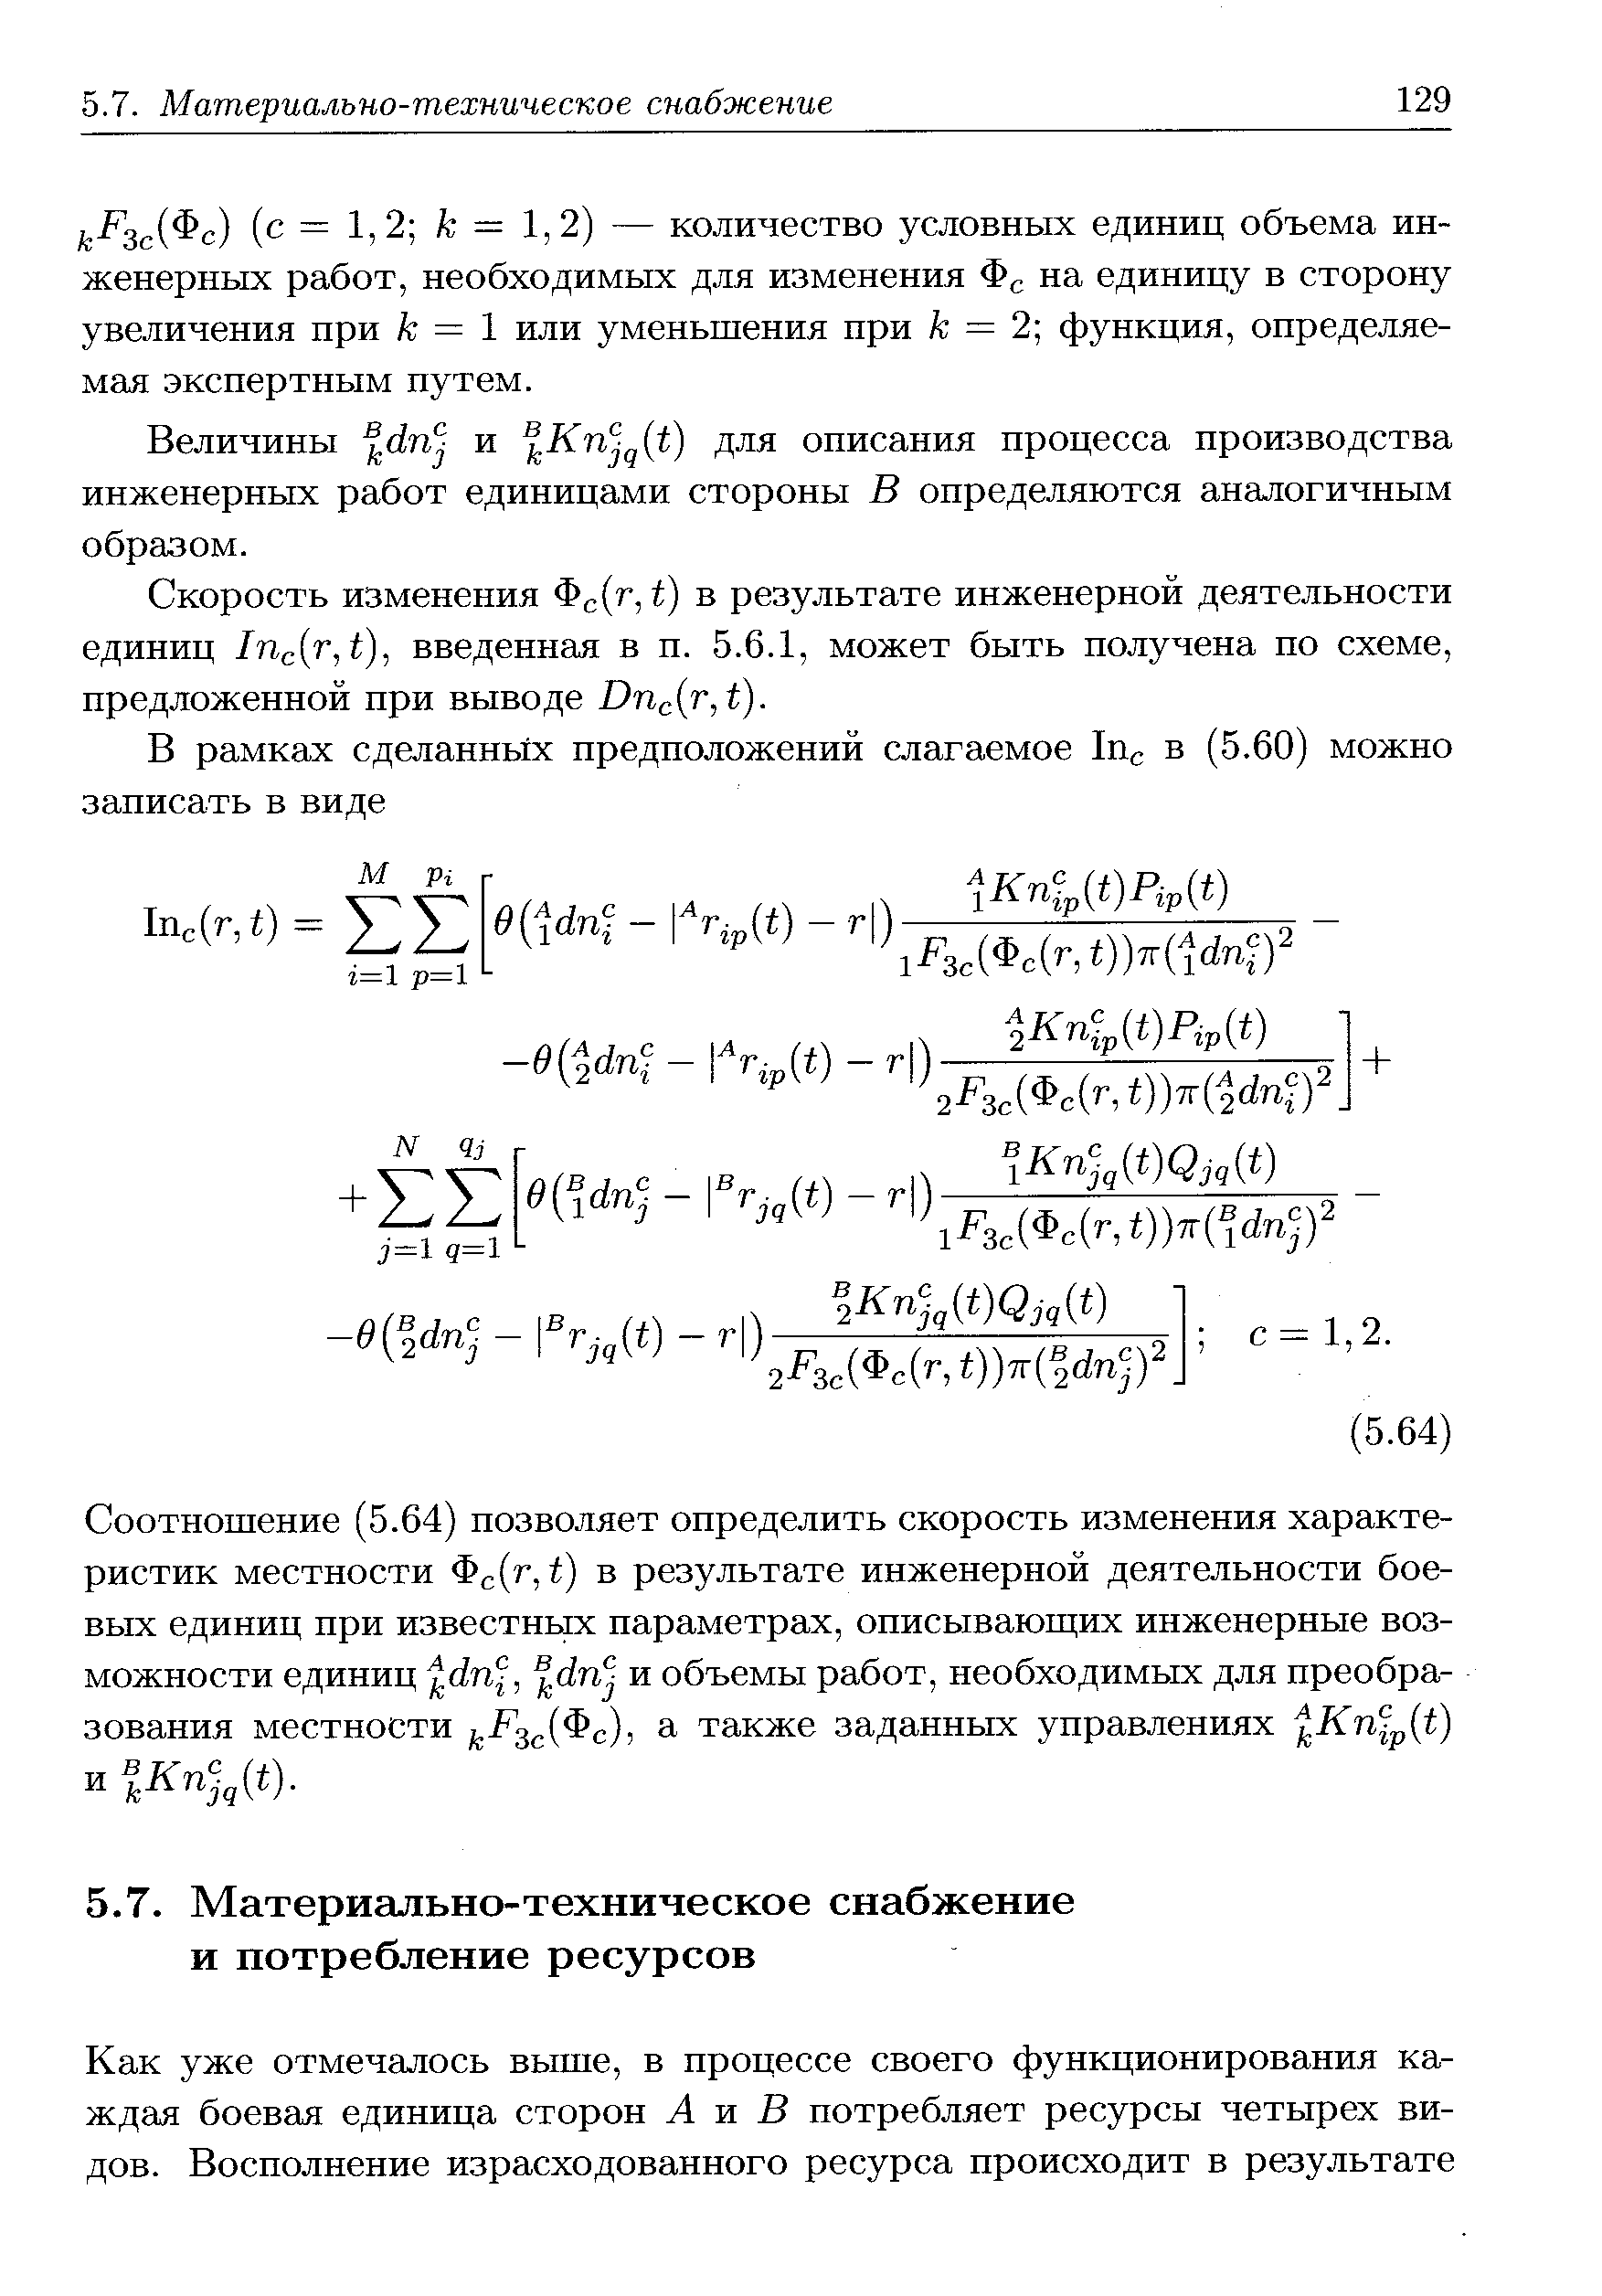 Скорость изменения Фс( , t) в результате инженерной деятельности единиц Iri r,t), введенная в п. 5.6.1, может быть получена по схеме, предложенной при выводе Dri r,t).